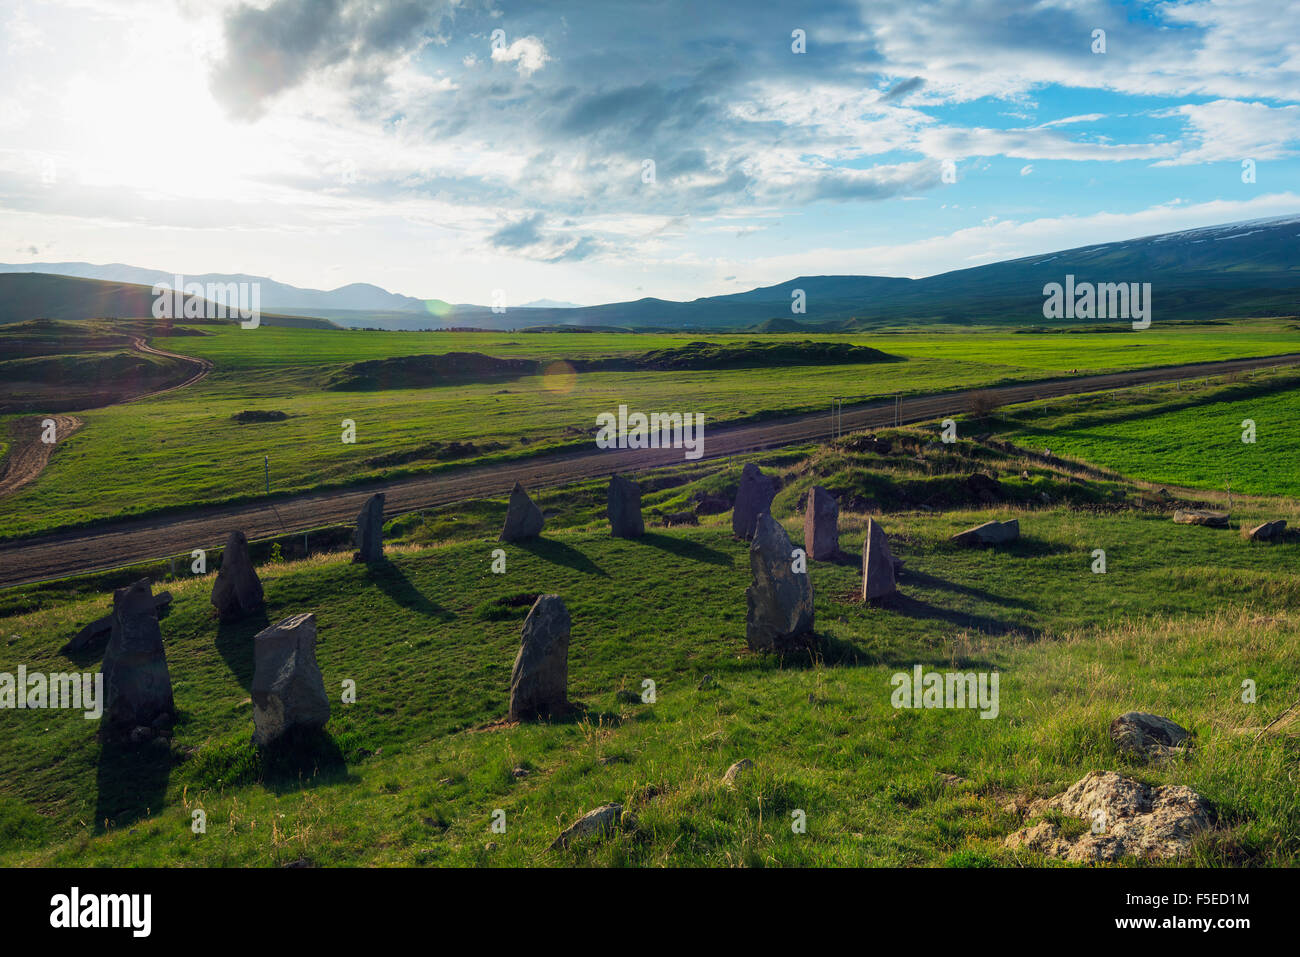 Karahunj Zorats Karer, archeologico preistorico sito di Stonehenge, Provincia di Syunik, Armenia, nel Caucaso e in Asia Centrale, Asia Foto Stock